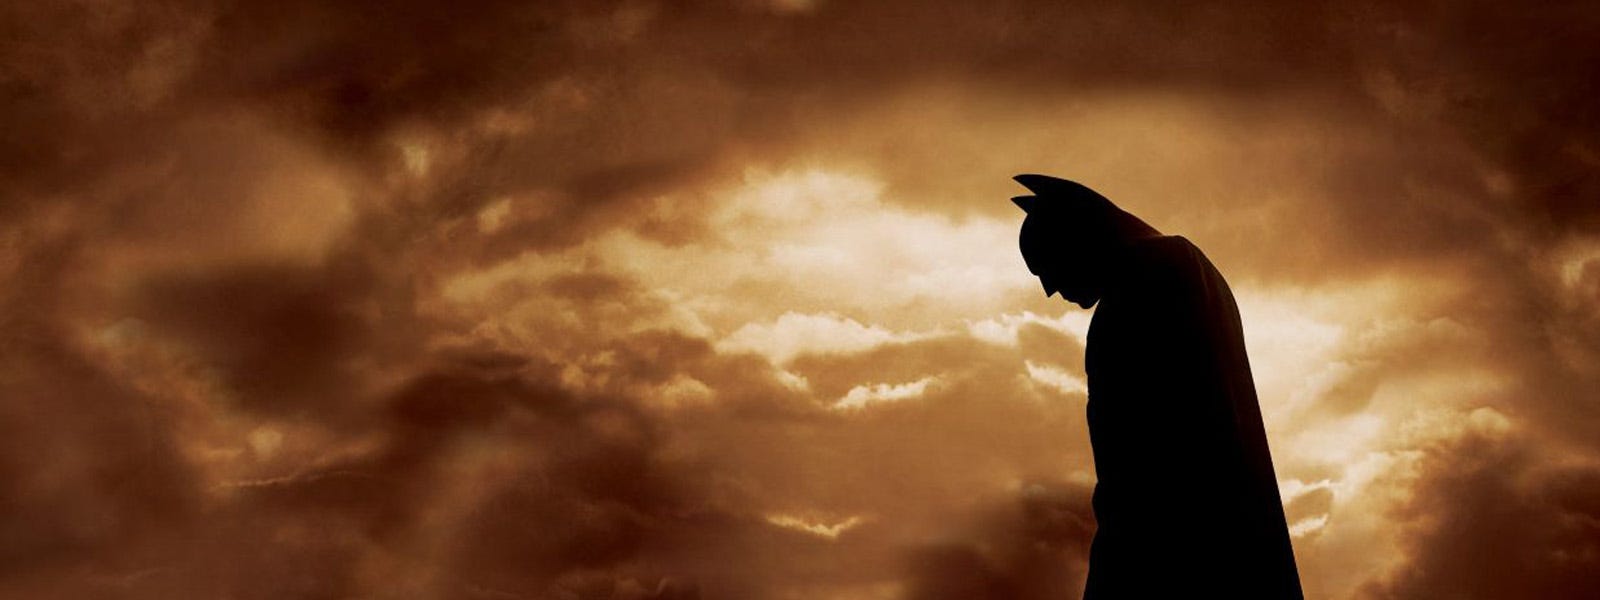  The Dark Knight Trilogy (Batman Begins / The Dark